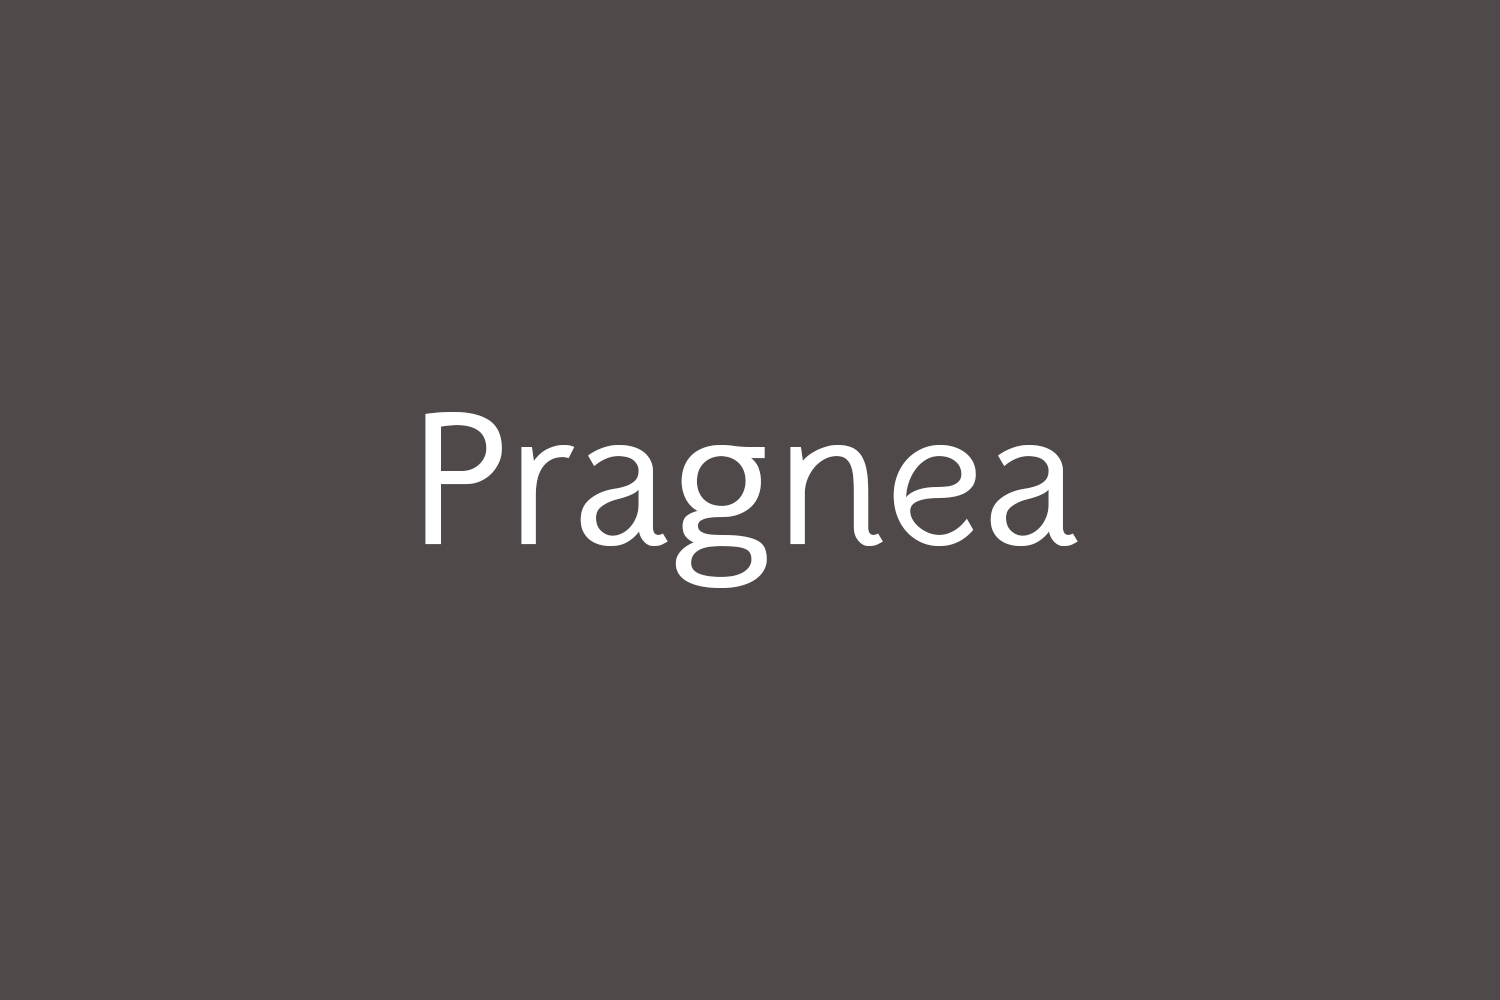 Pragnea Free Font